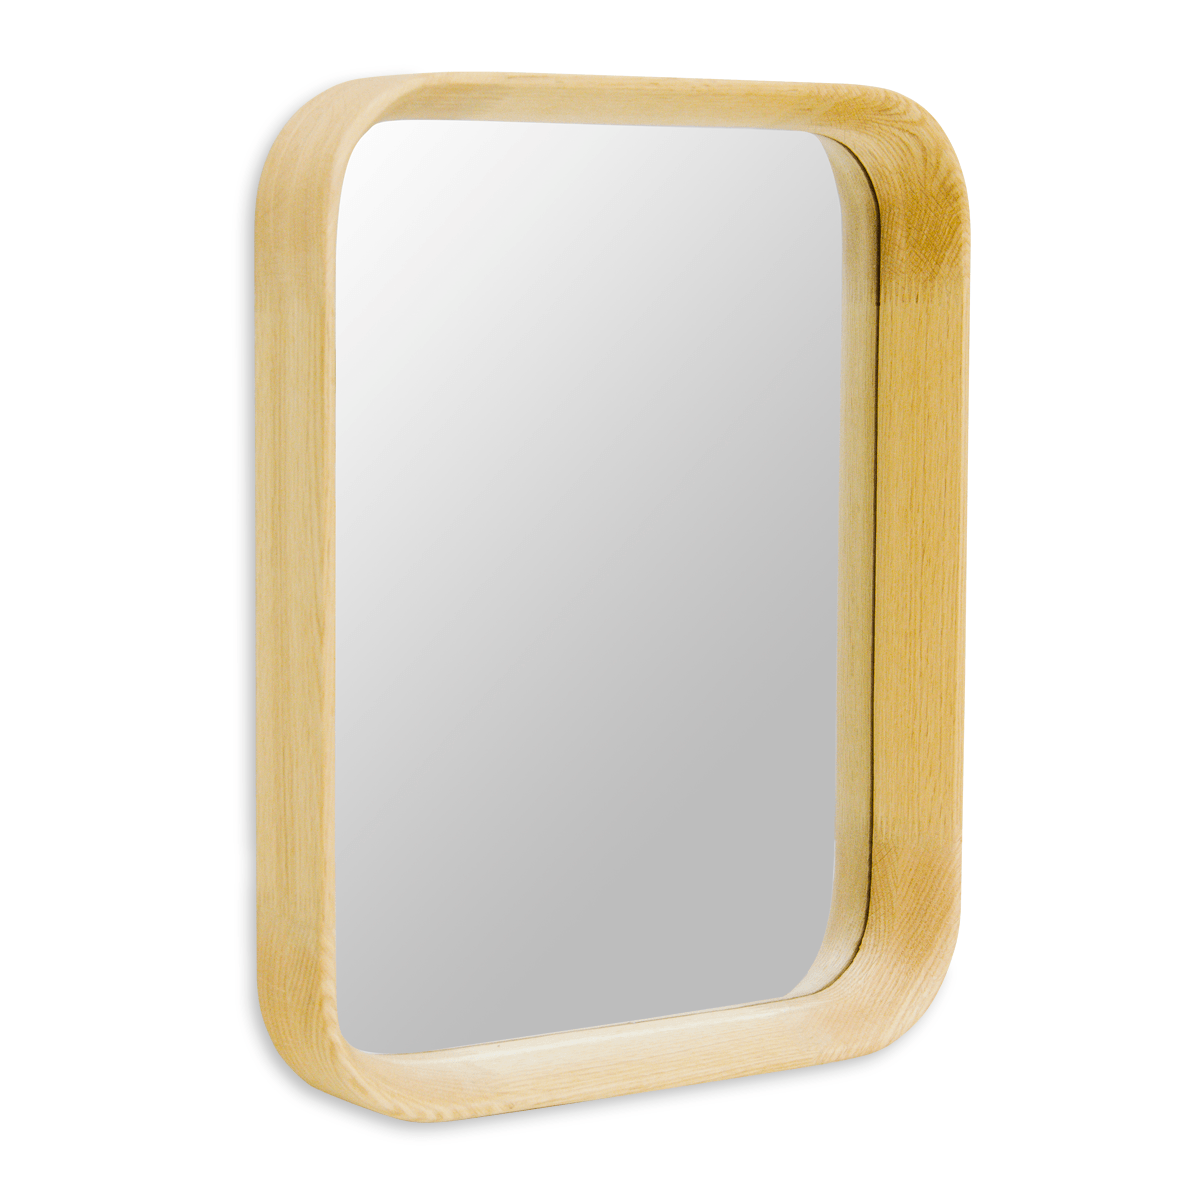 Espejo 50 X 40 Marco Roble | Espejos | decoracion